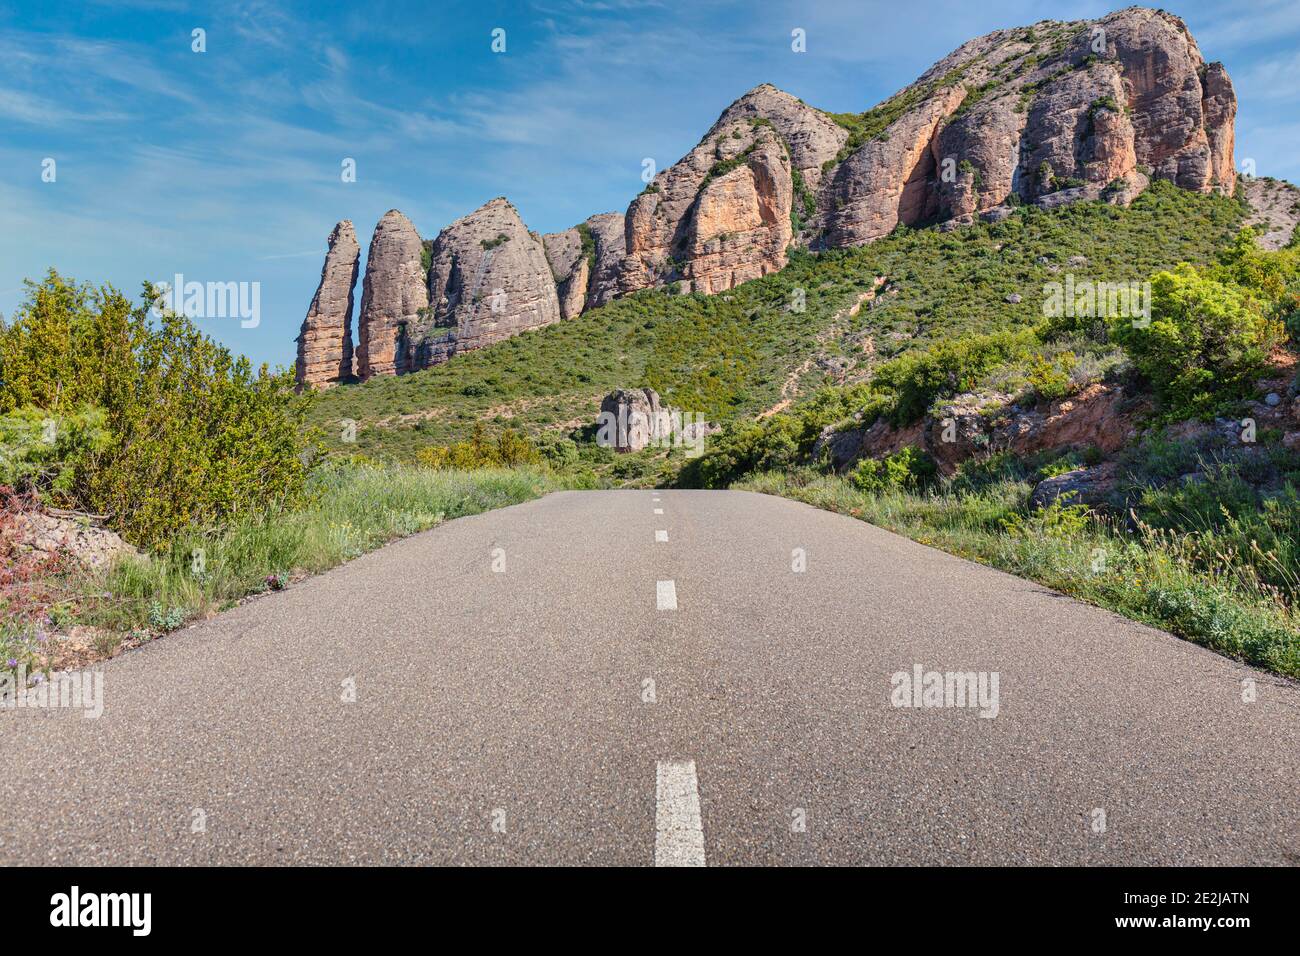 Formazioni rocciose conglomerate dei Mallos de Riglos, provincia di Huesca, Aragona, Spagna. I Mallos de Riglos sono alti circa 300 metri. Le sono Foto Stock